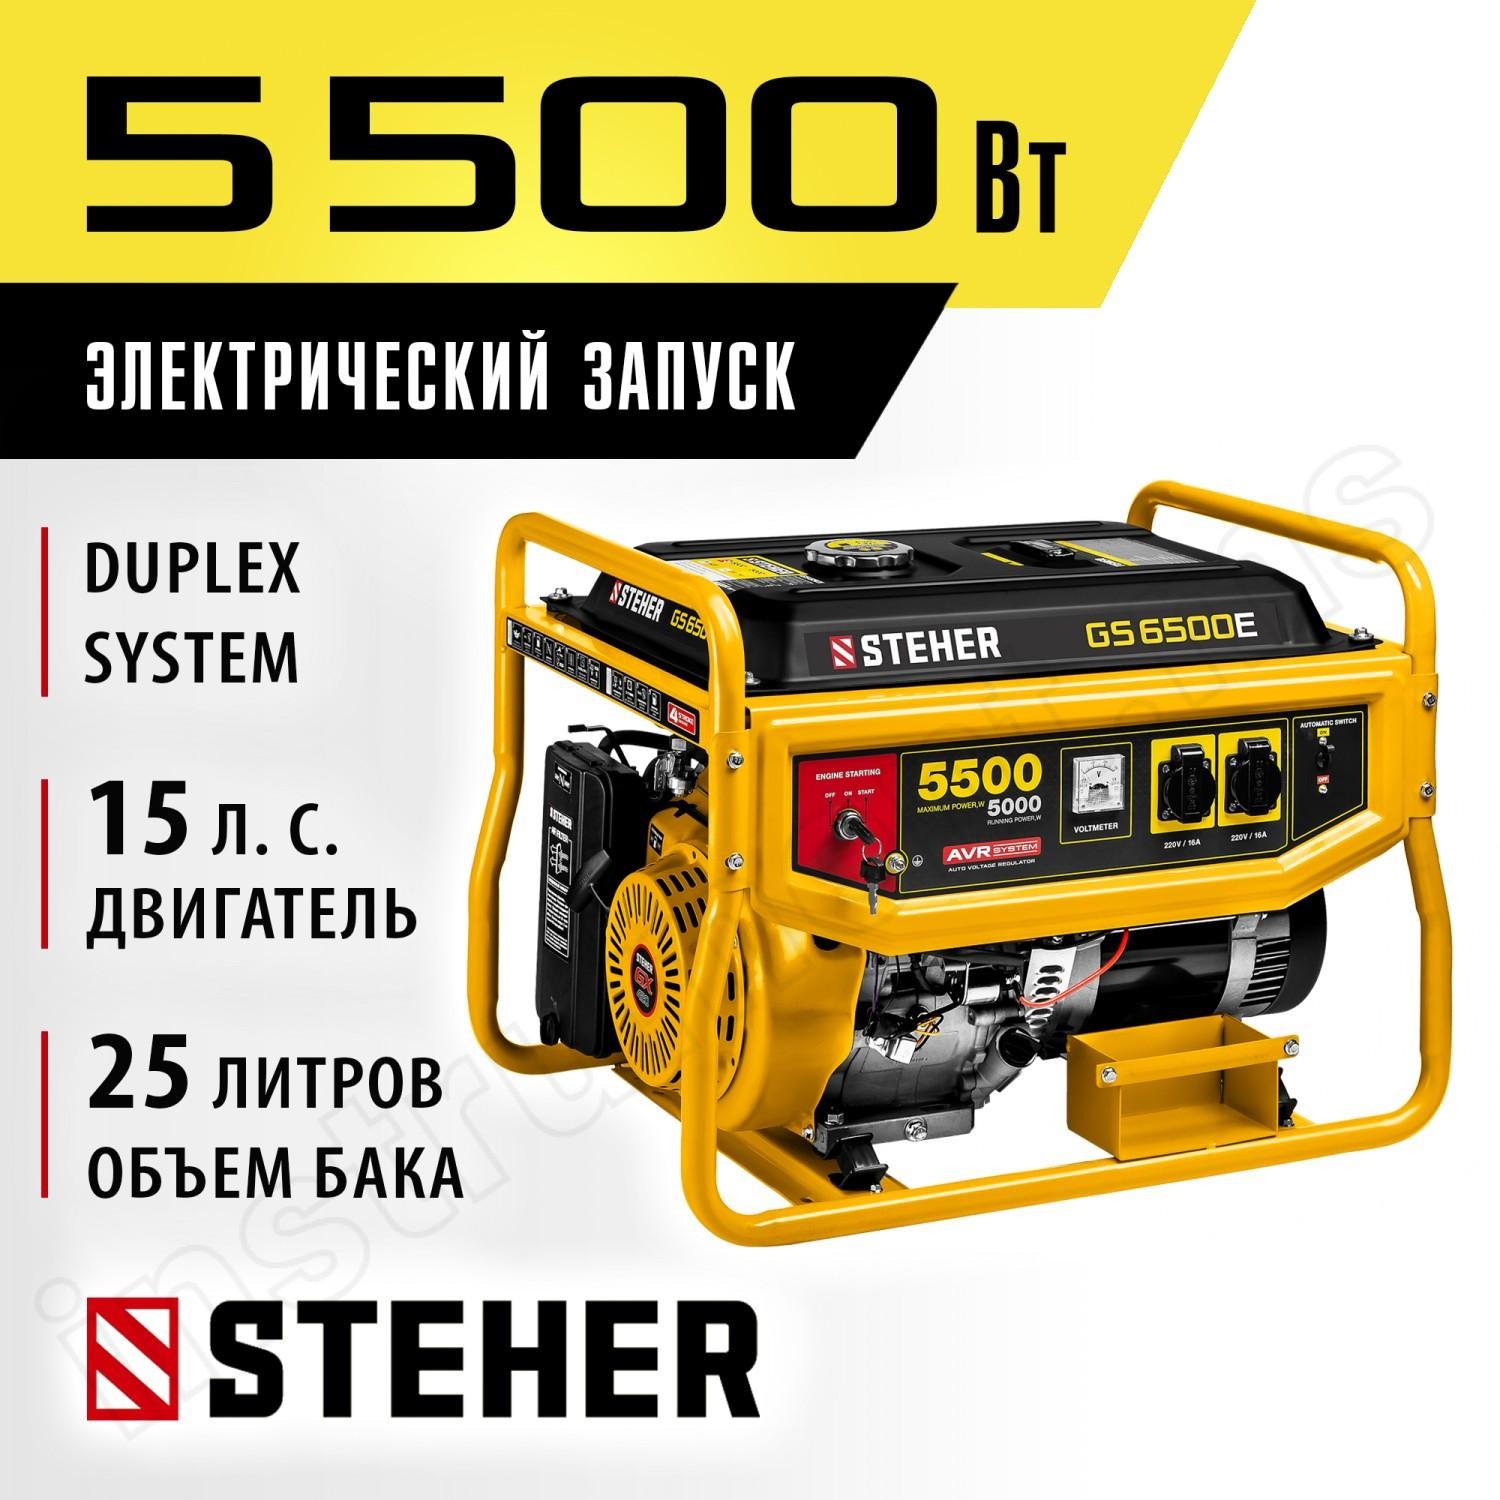 STEHER  5500 Вт, бензиновый генератор с электростартером (GS-6500E) - фото 2